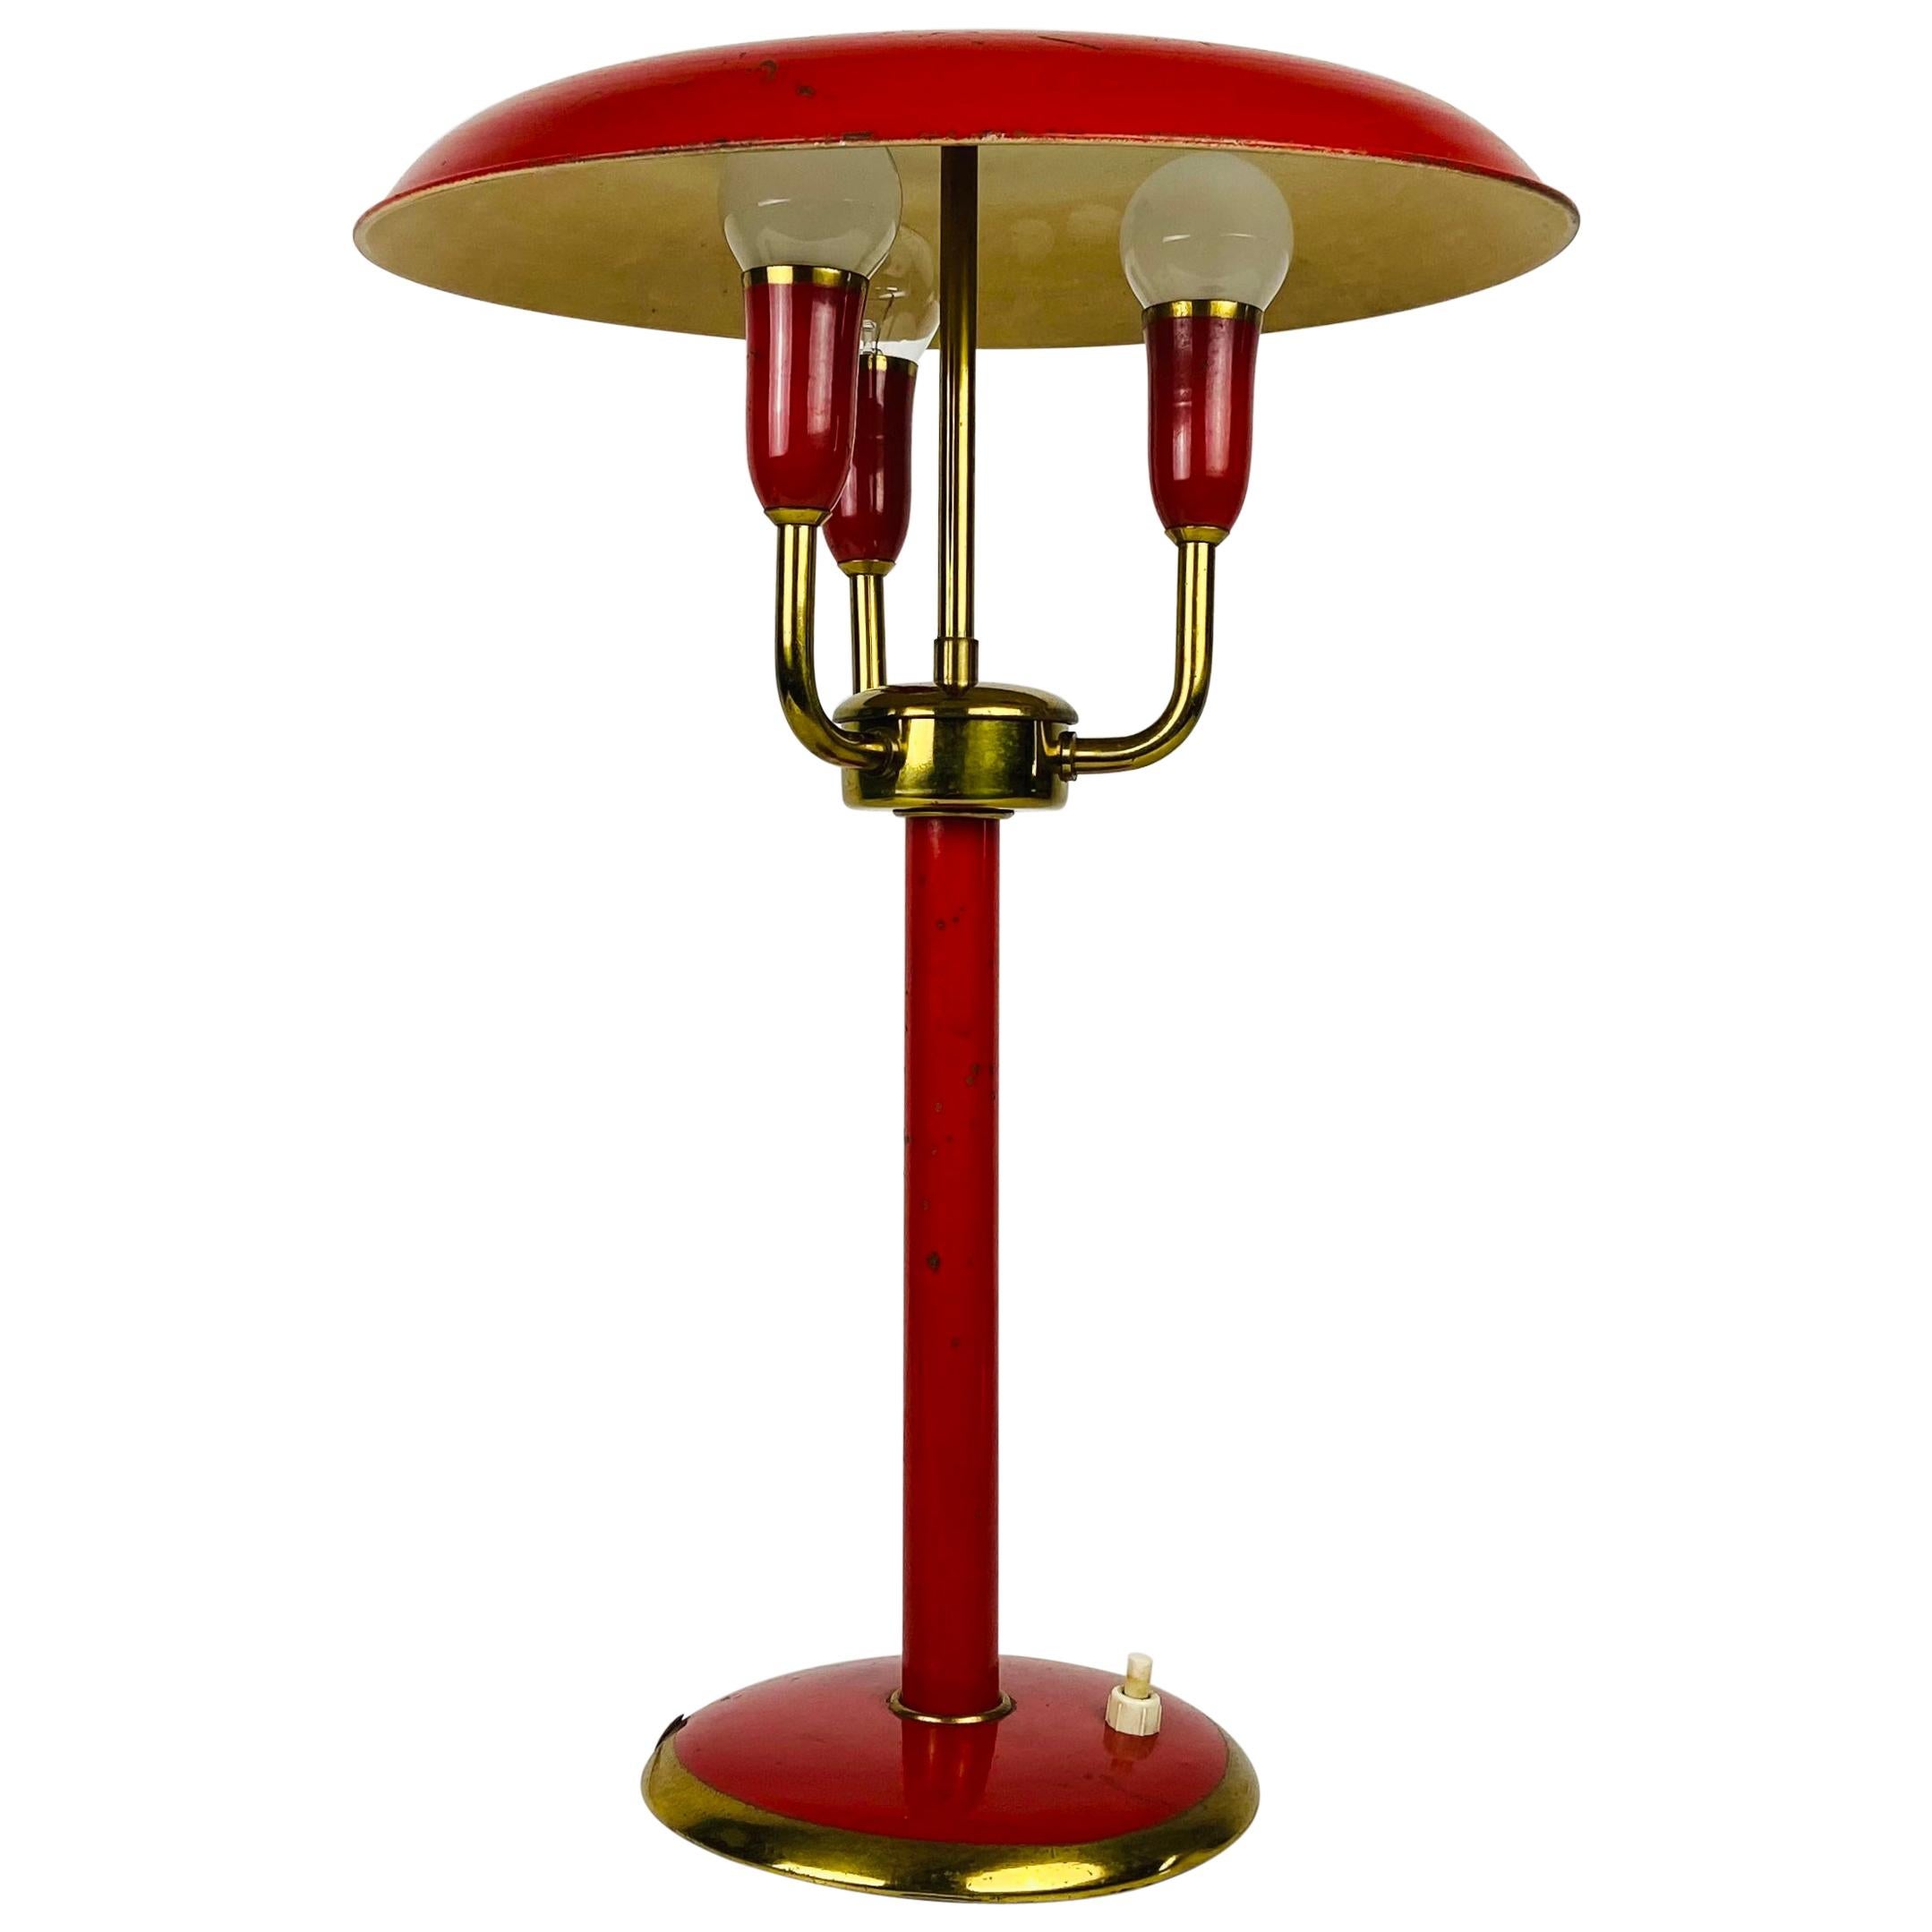 Seltene rote italienische Tischlampe mit 3 Armen im Stil von Stilnovo, 1960er Jahre, Italien